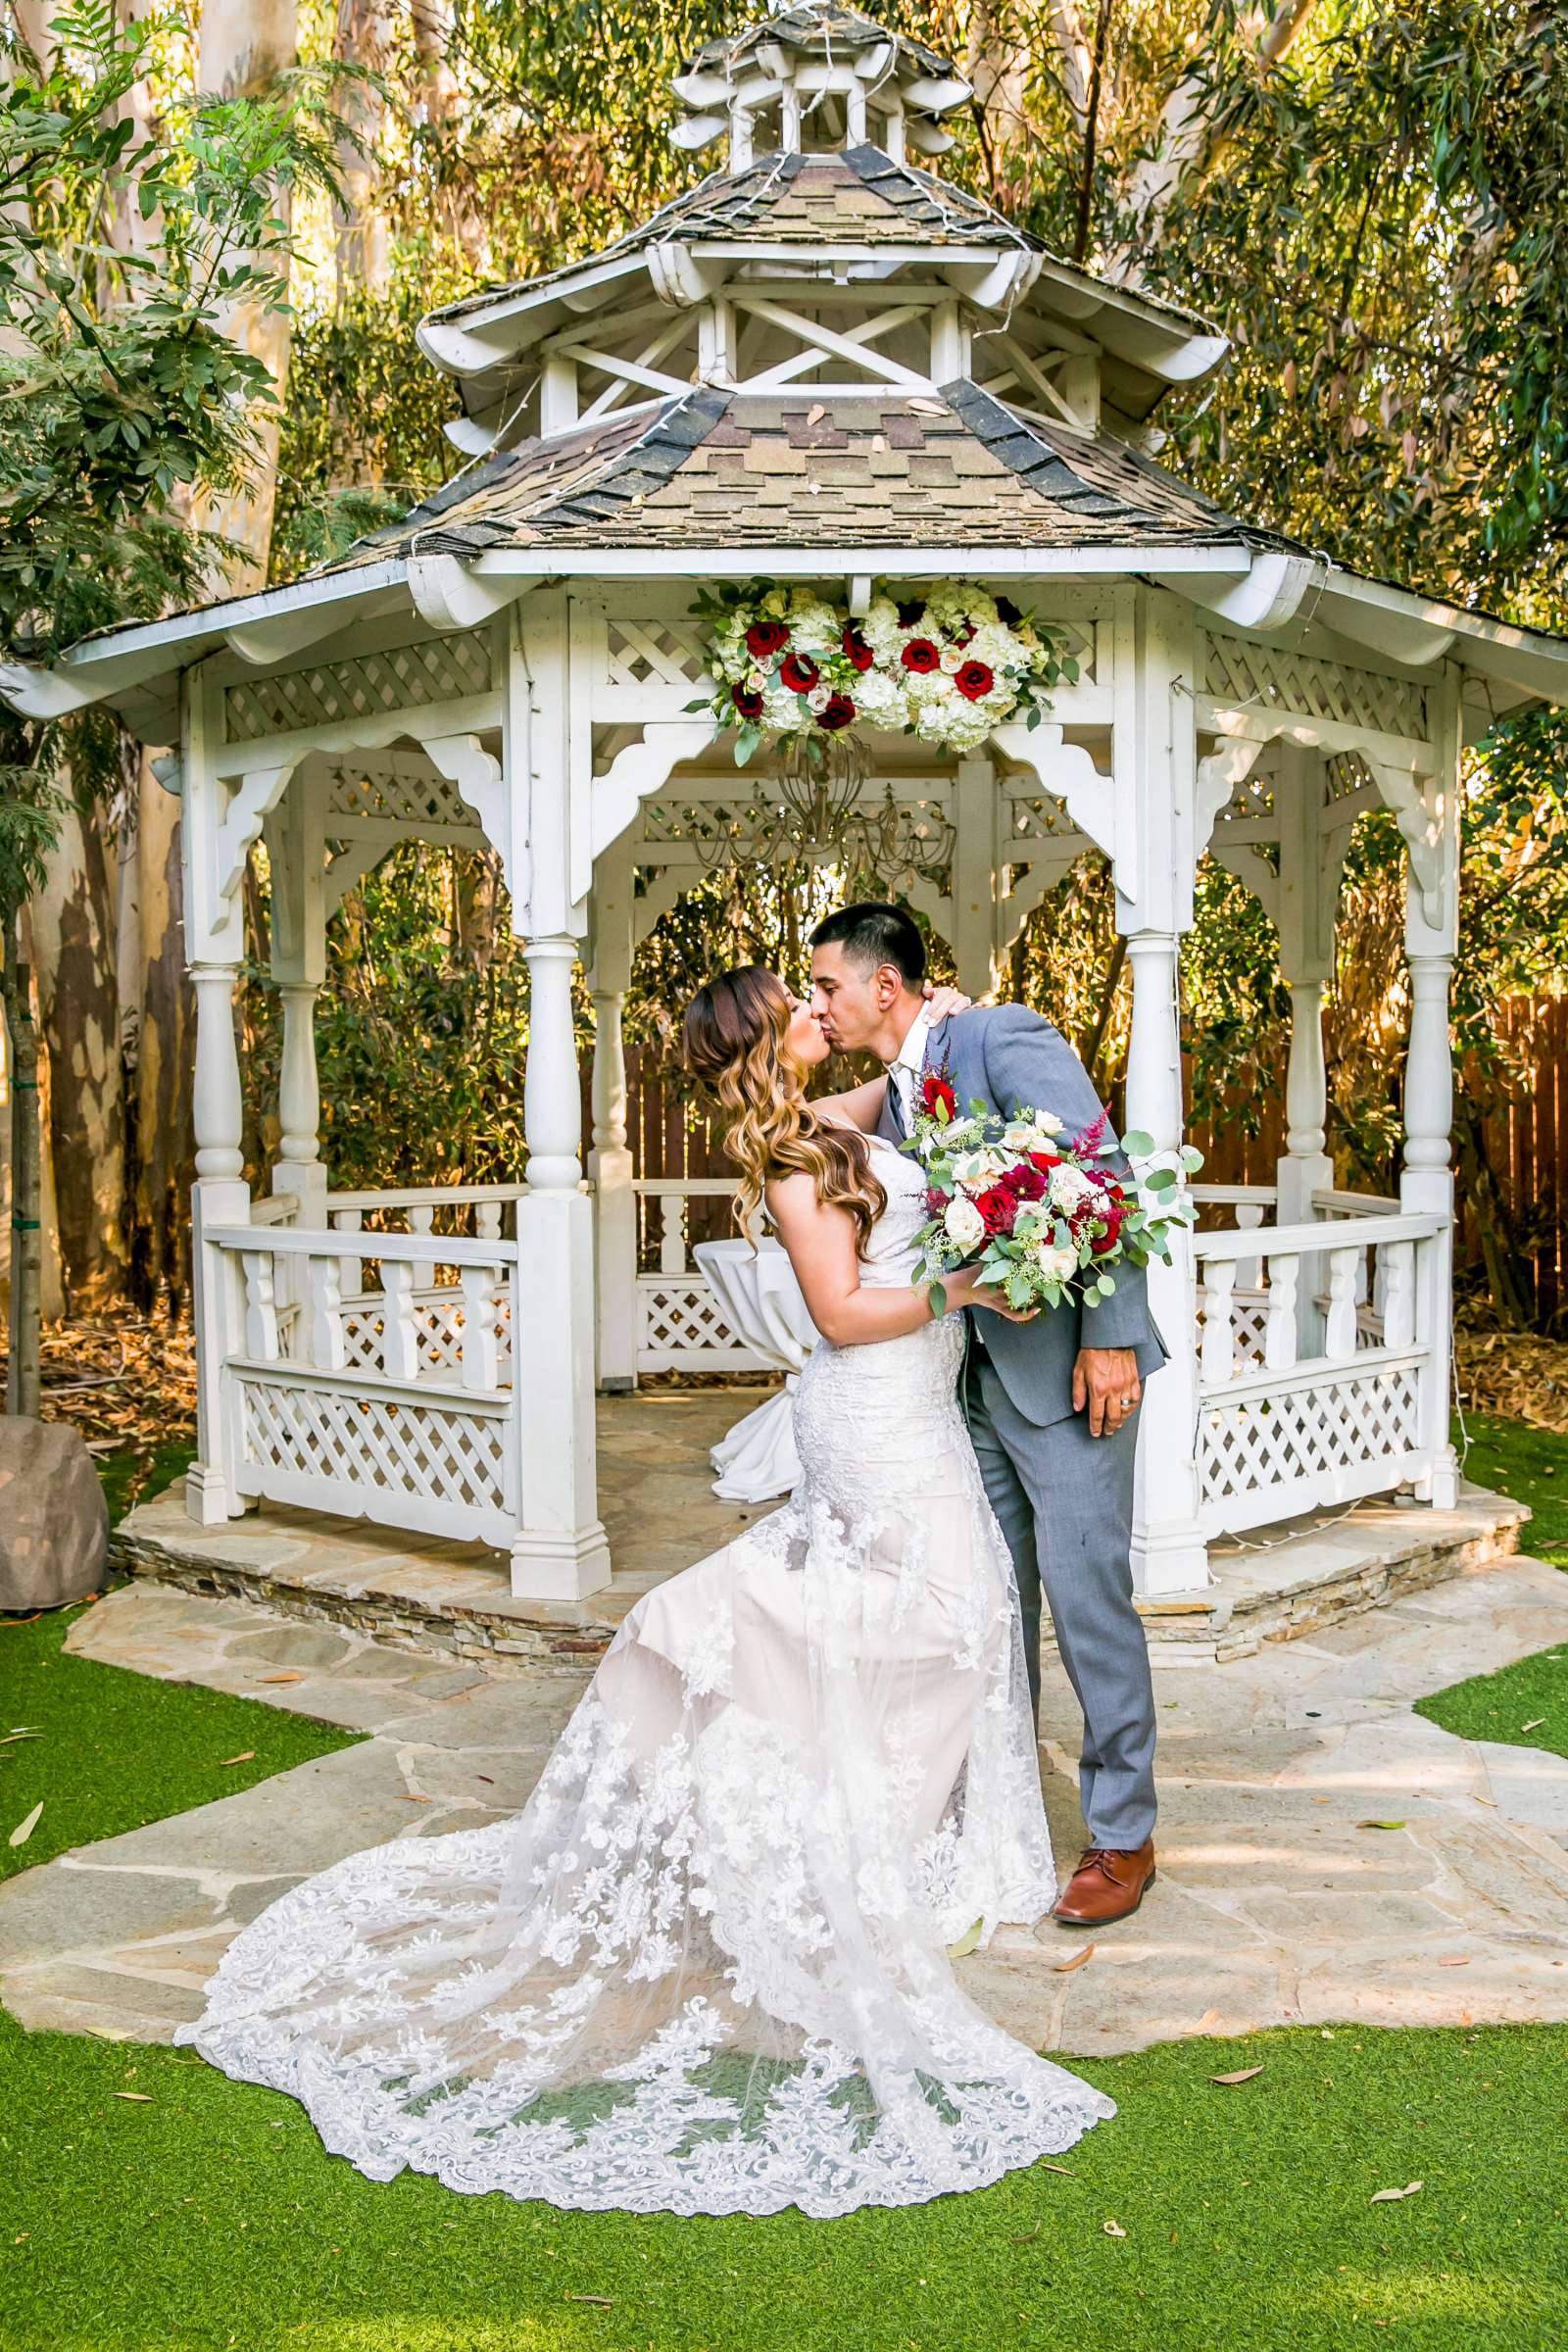 Twin Oaks House & Gardens Wedding Estate Wedding, Merrilynn and Trey Wedding Photo #19 by True Photography